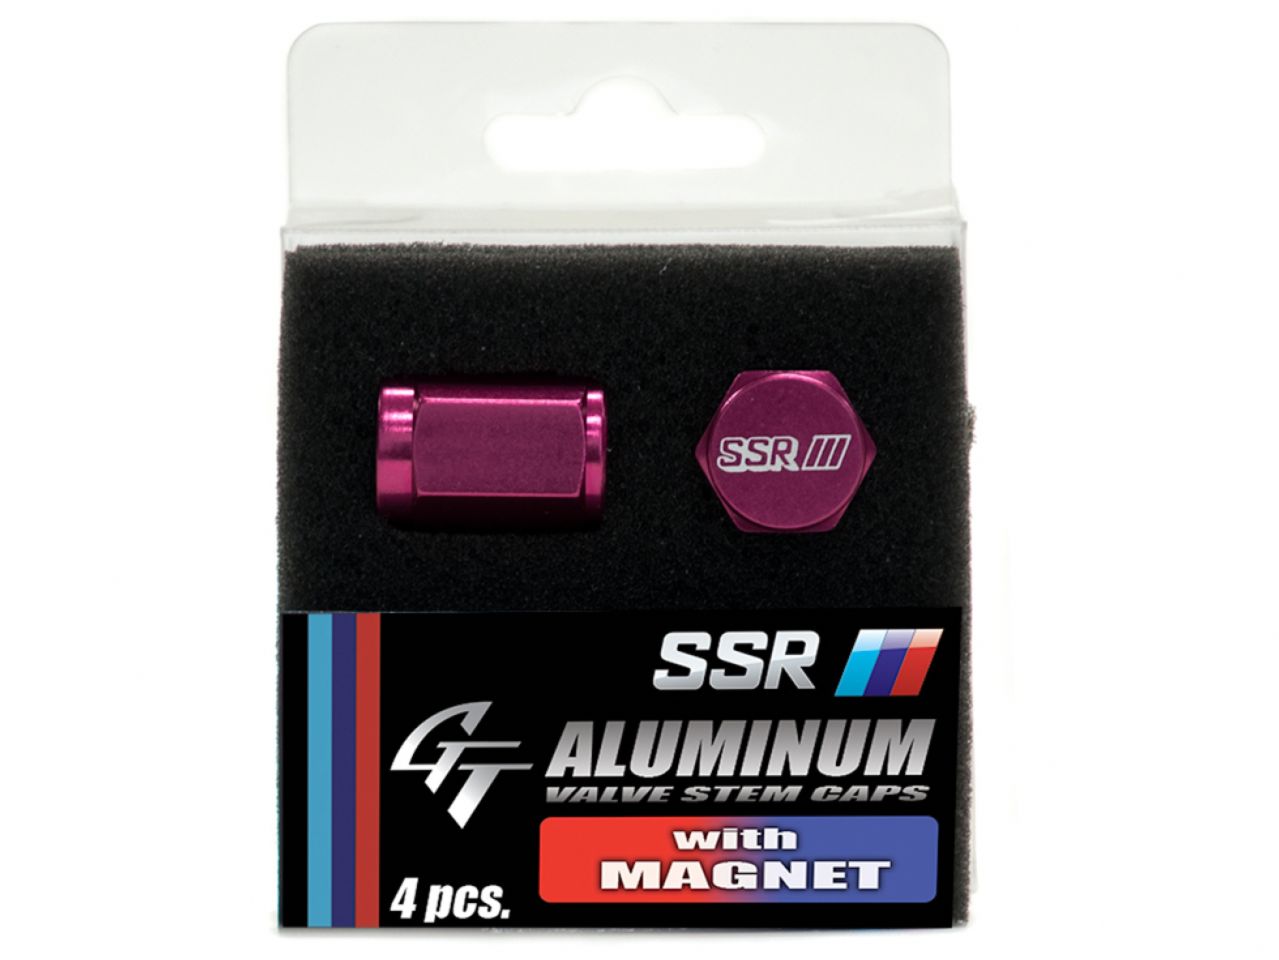 SSR Aluminum Valve Stem Cap w/ Magnet (4 Pcs.) - Red